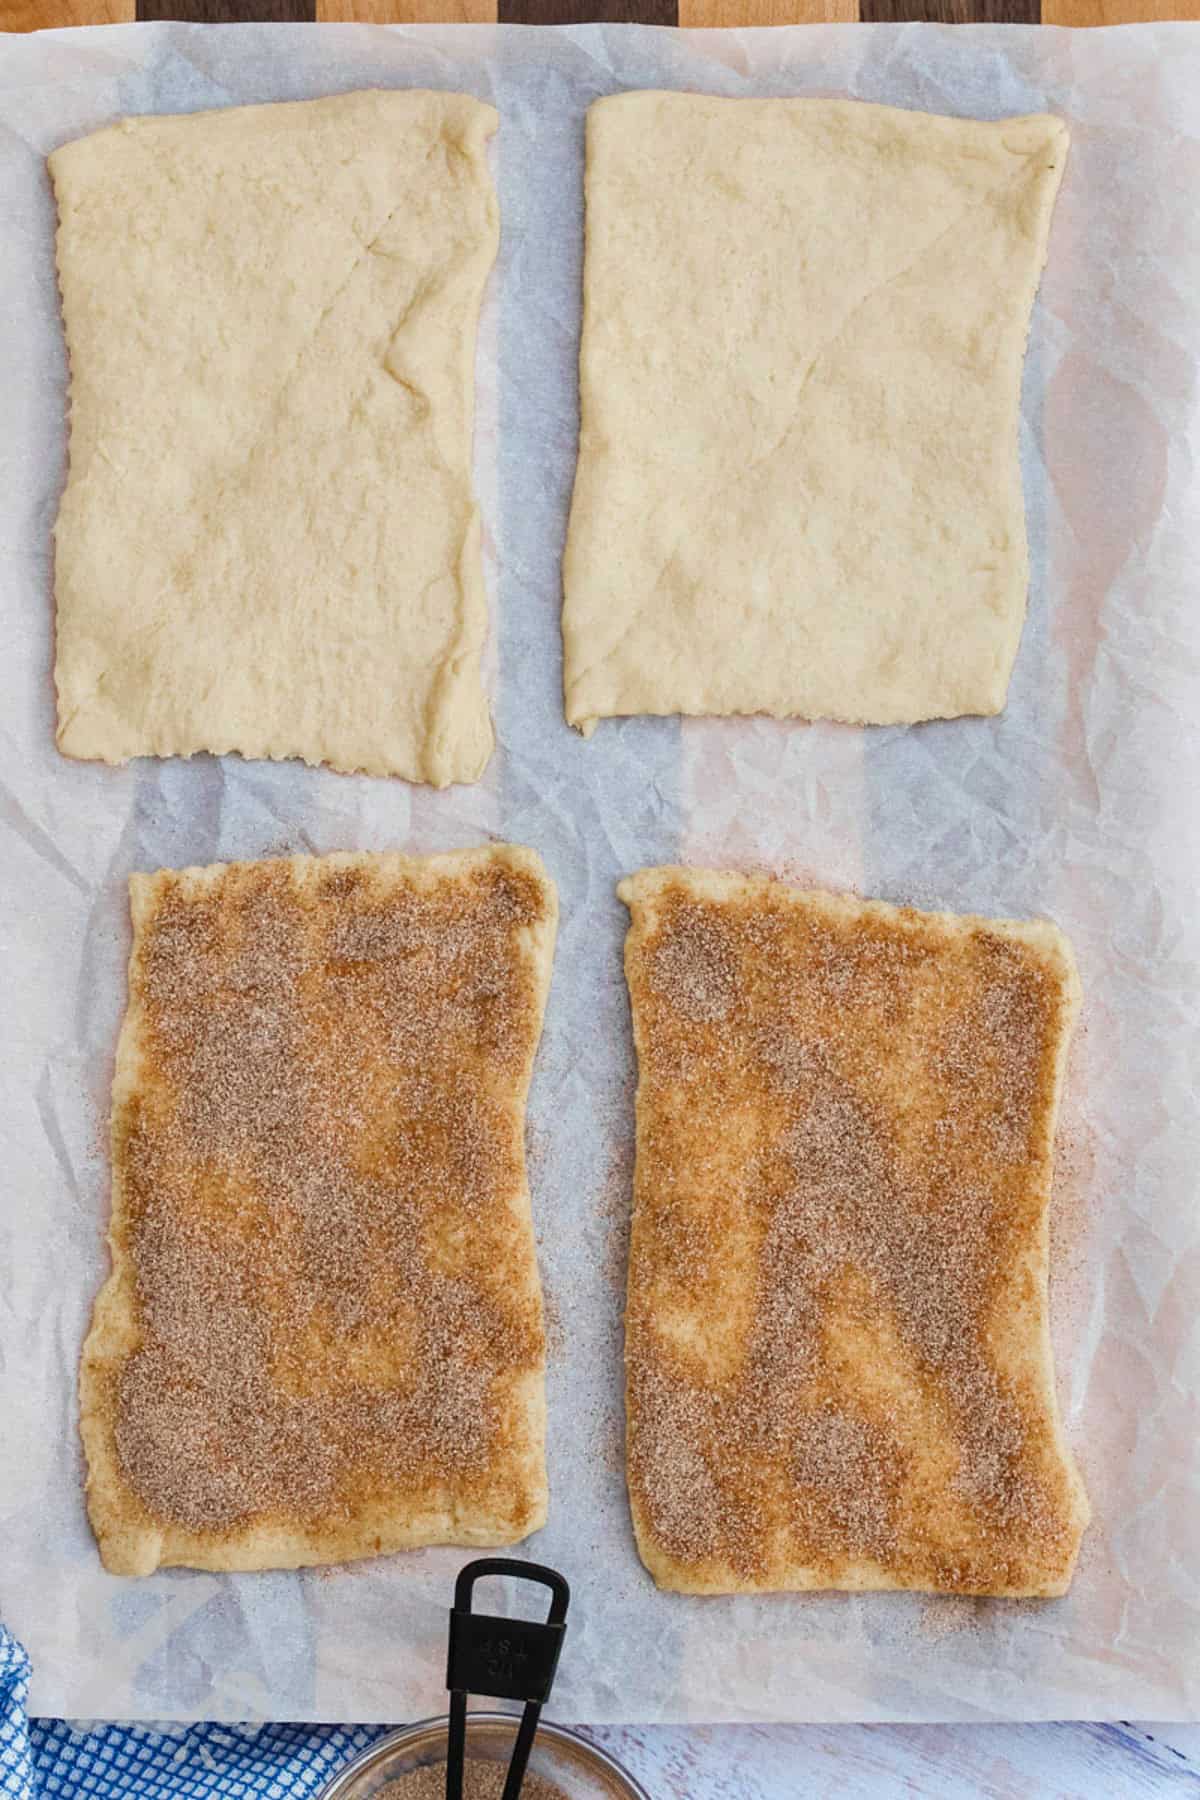 adding cinnamon sugar to pastry sheets to make Baked Churros